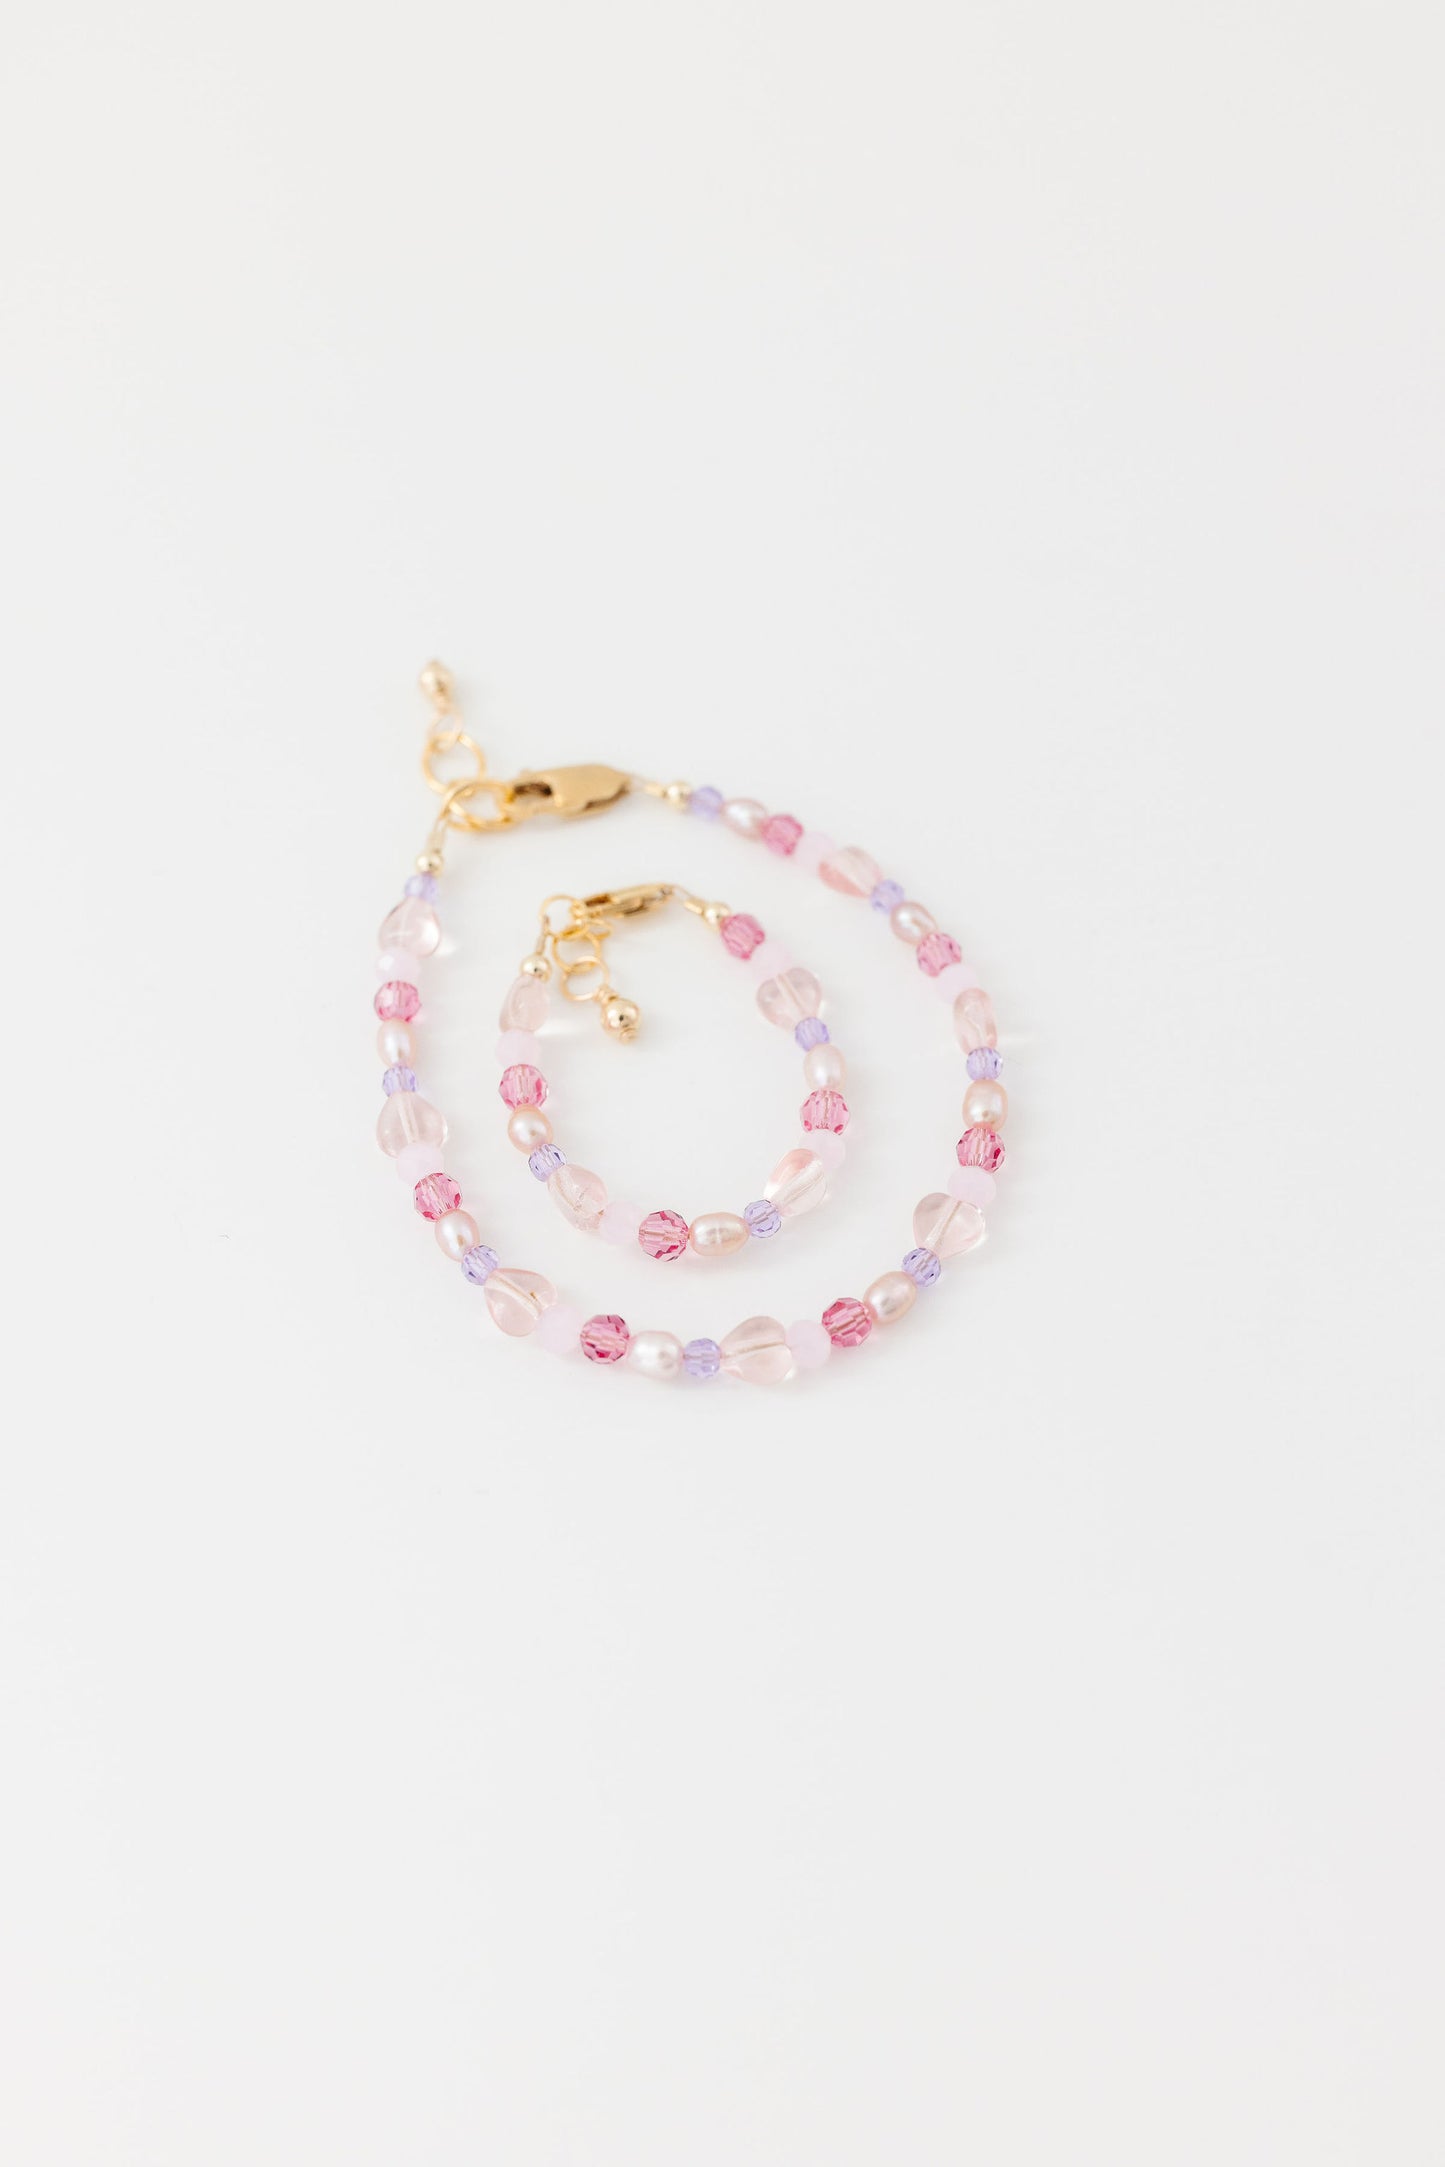 Lover Baby Bracelet (4MM beads)